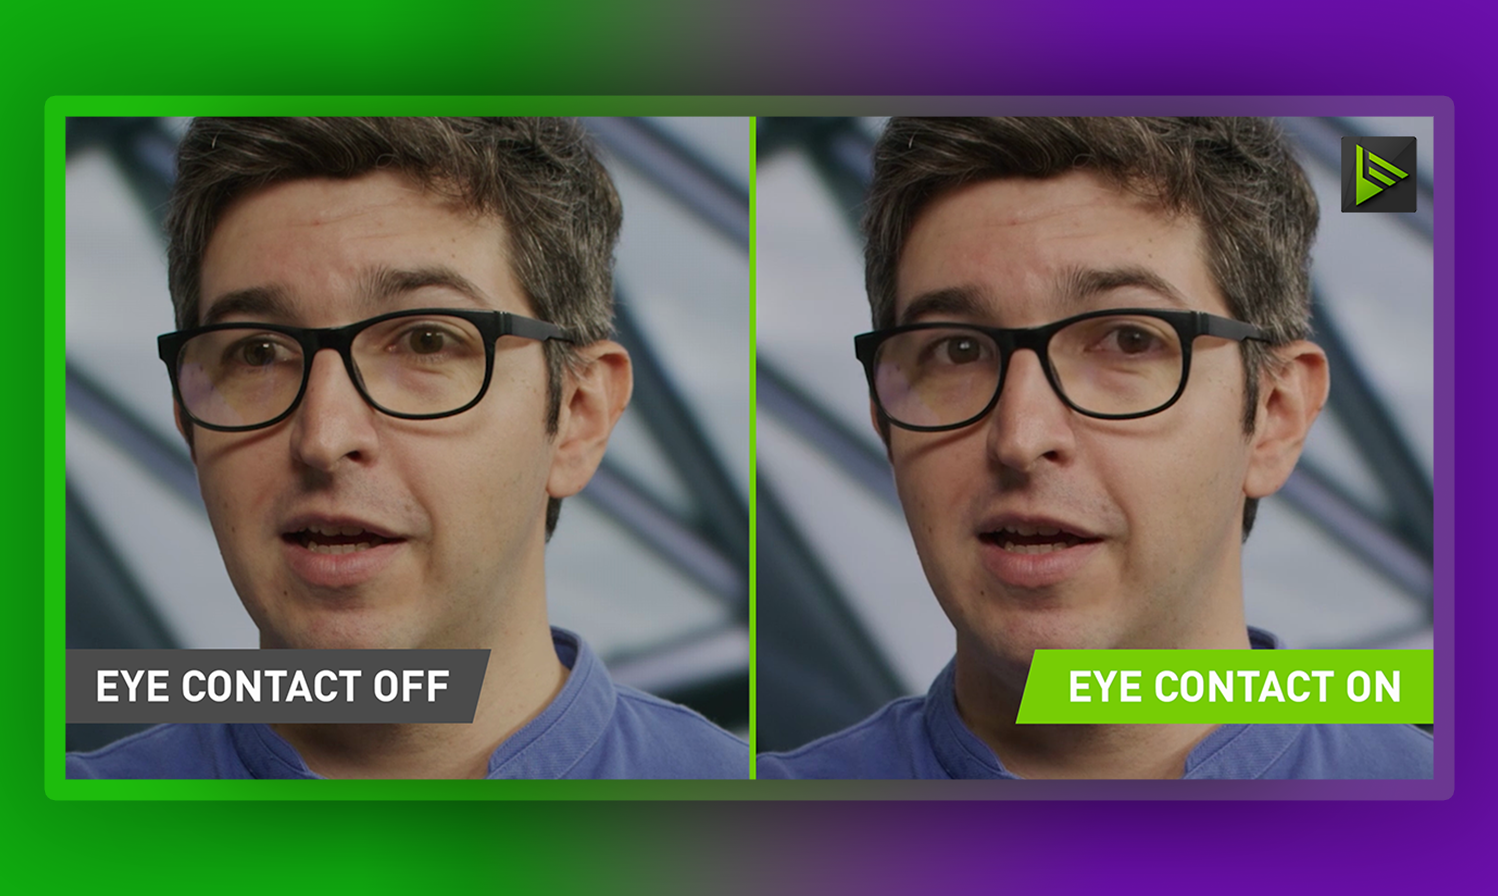 Améliorez vos présentations grâce à la fonctionnalité de maintien du contact visuel basée sur l'IA de NVIDIA